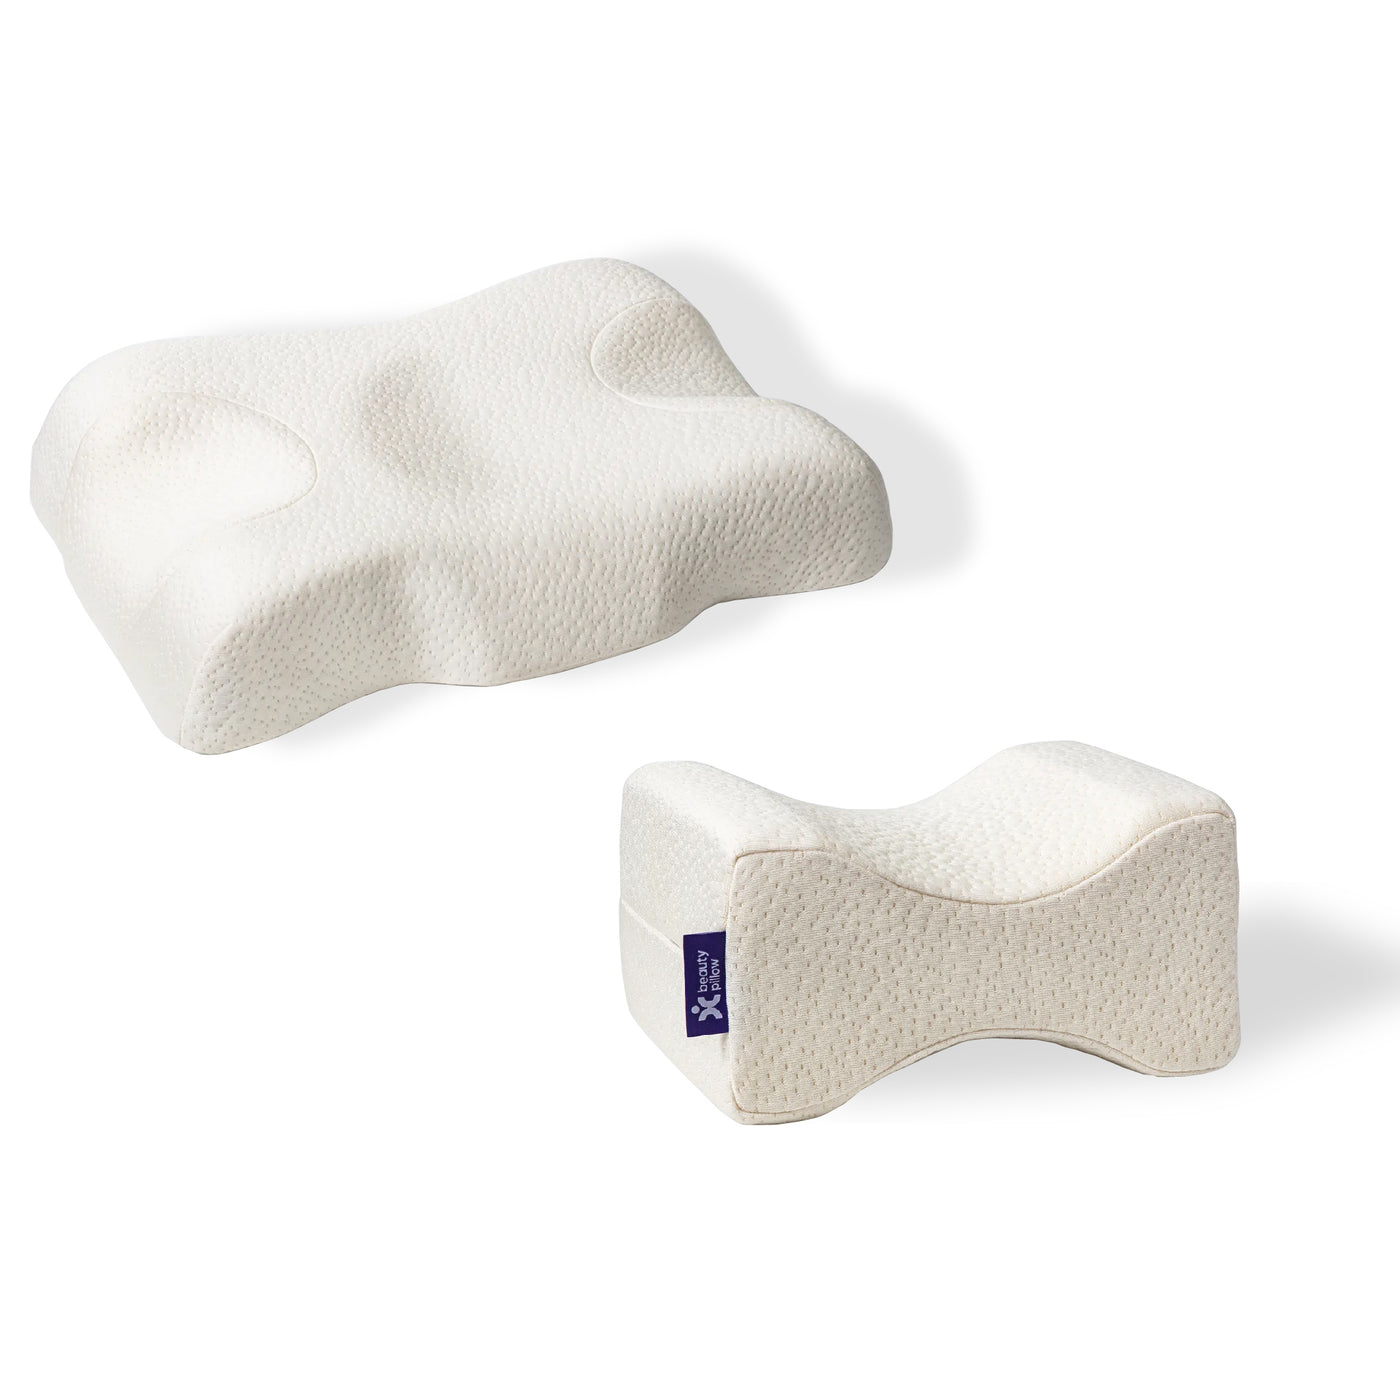 Kırışıklık Önleyici Ortopedik Güzellik Yastığı + Ortopedik Diz & Bacak Arası Destek Yastığı Seti